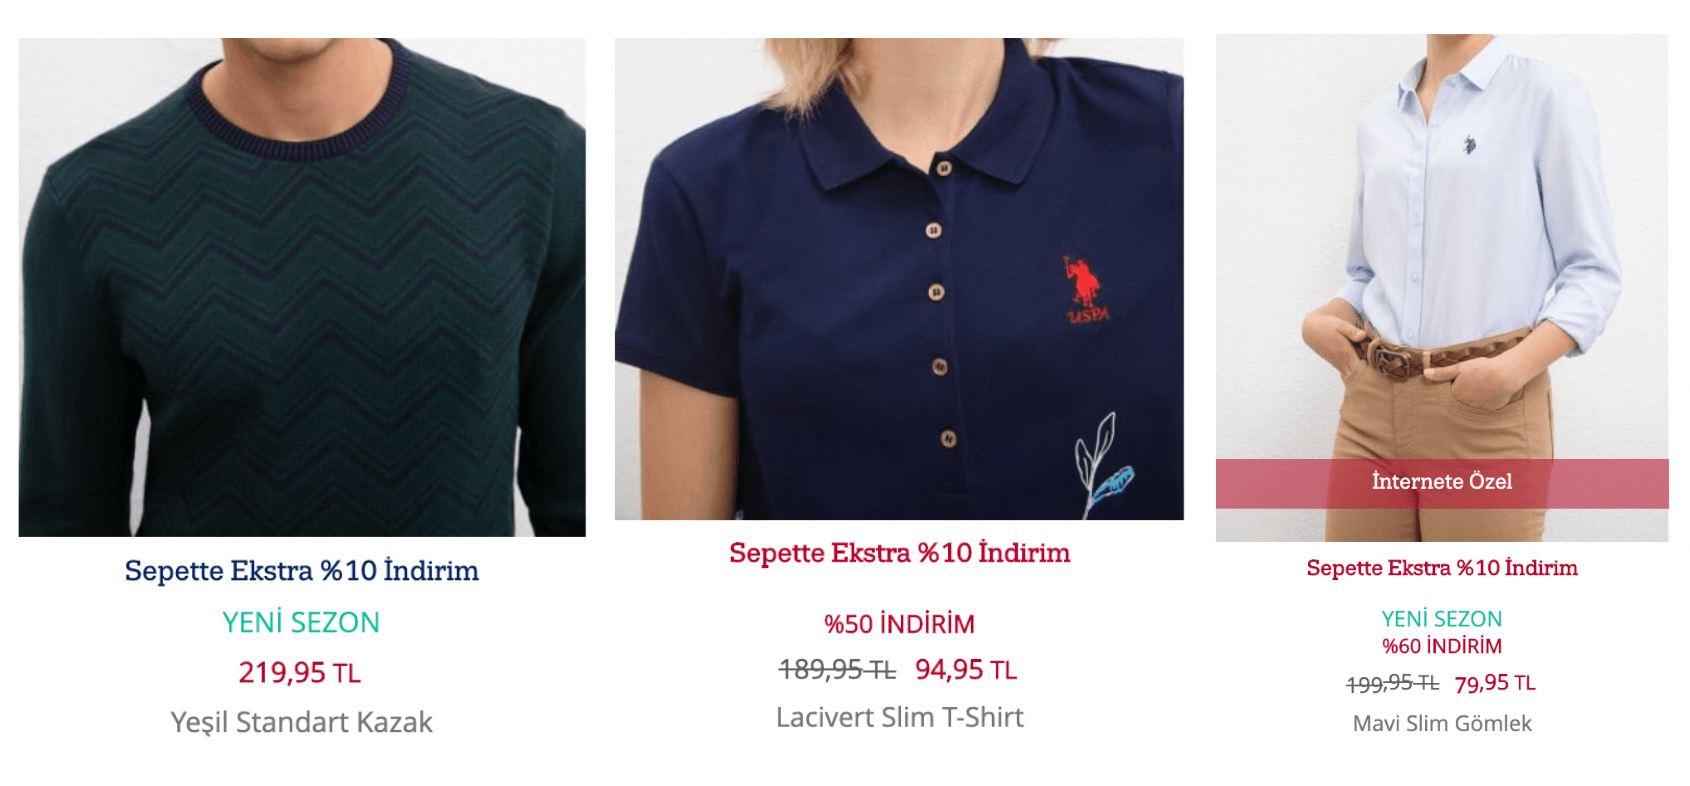 Цены в магазине U.S.Polo в Самсуне: свитер — 2600 ₽, поло — 1140 ₽, рубашка — 1160 ₽. Для сравнения, цены в ТЦ «Авиапарк» в Москве: свитер — 5900 ₽, поло от 2500 ₽, рубашки от 4000 ₽